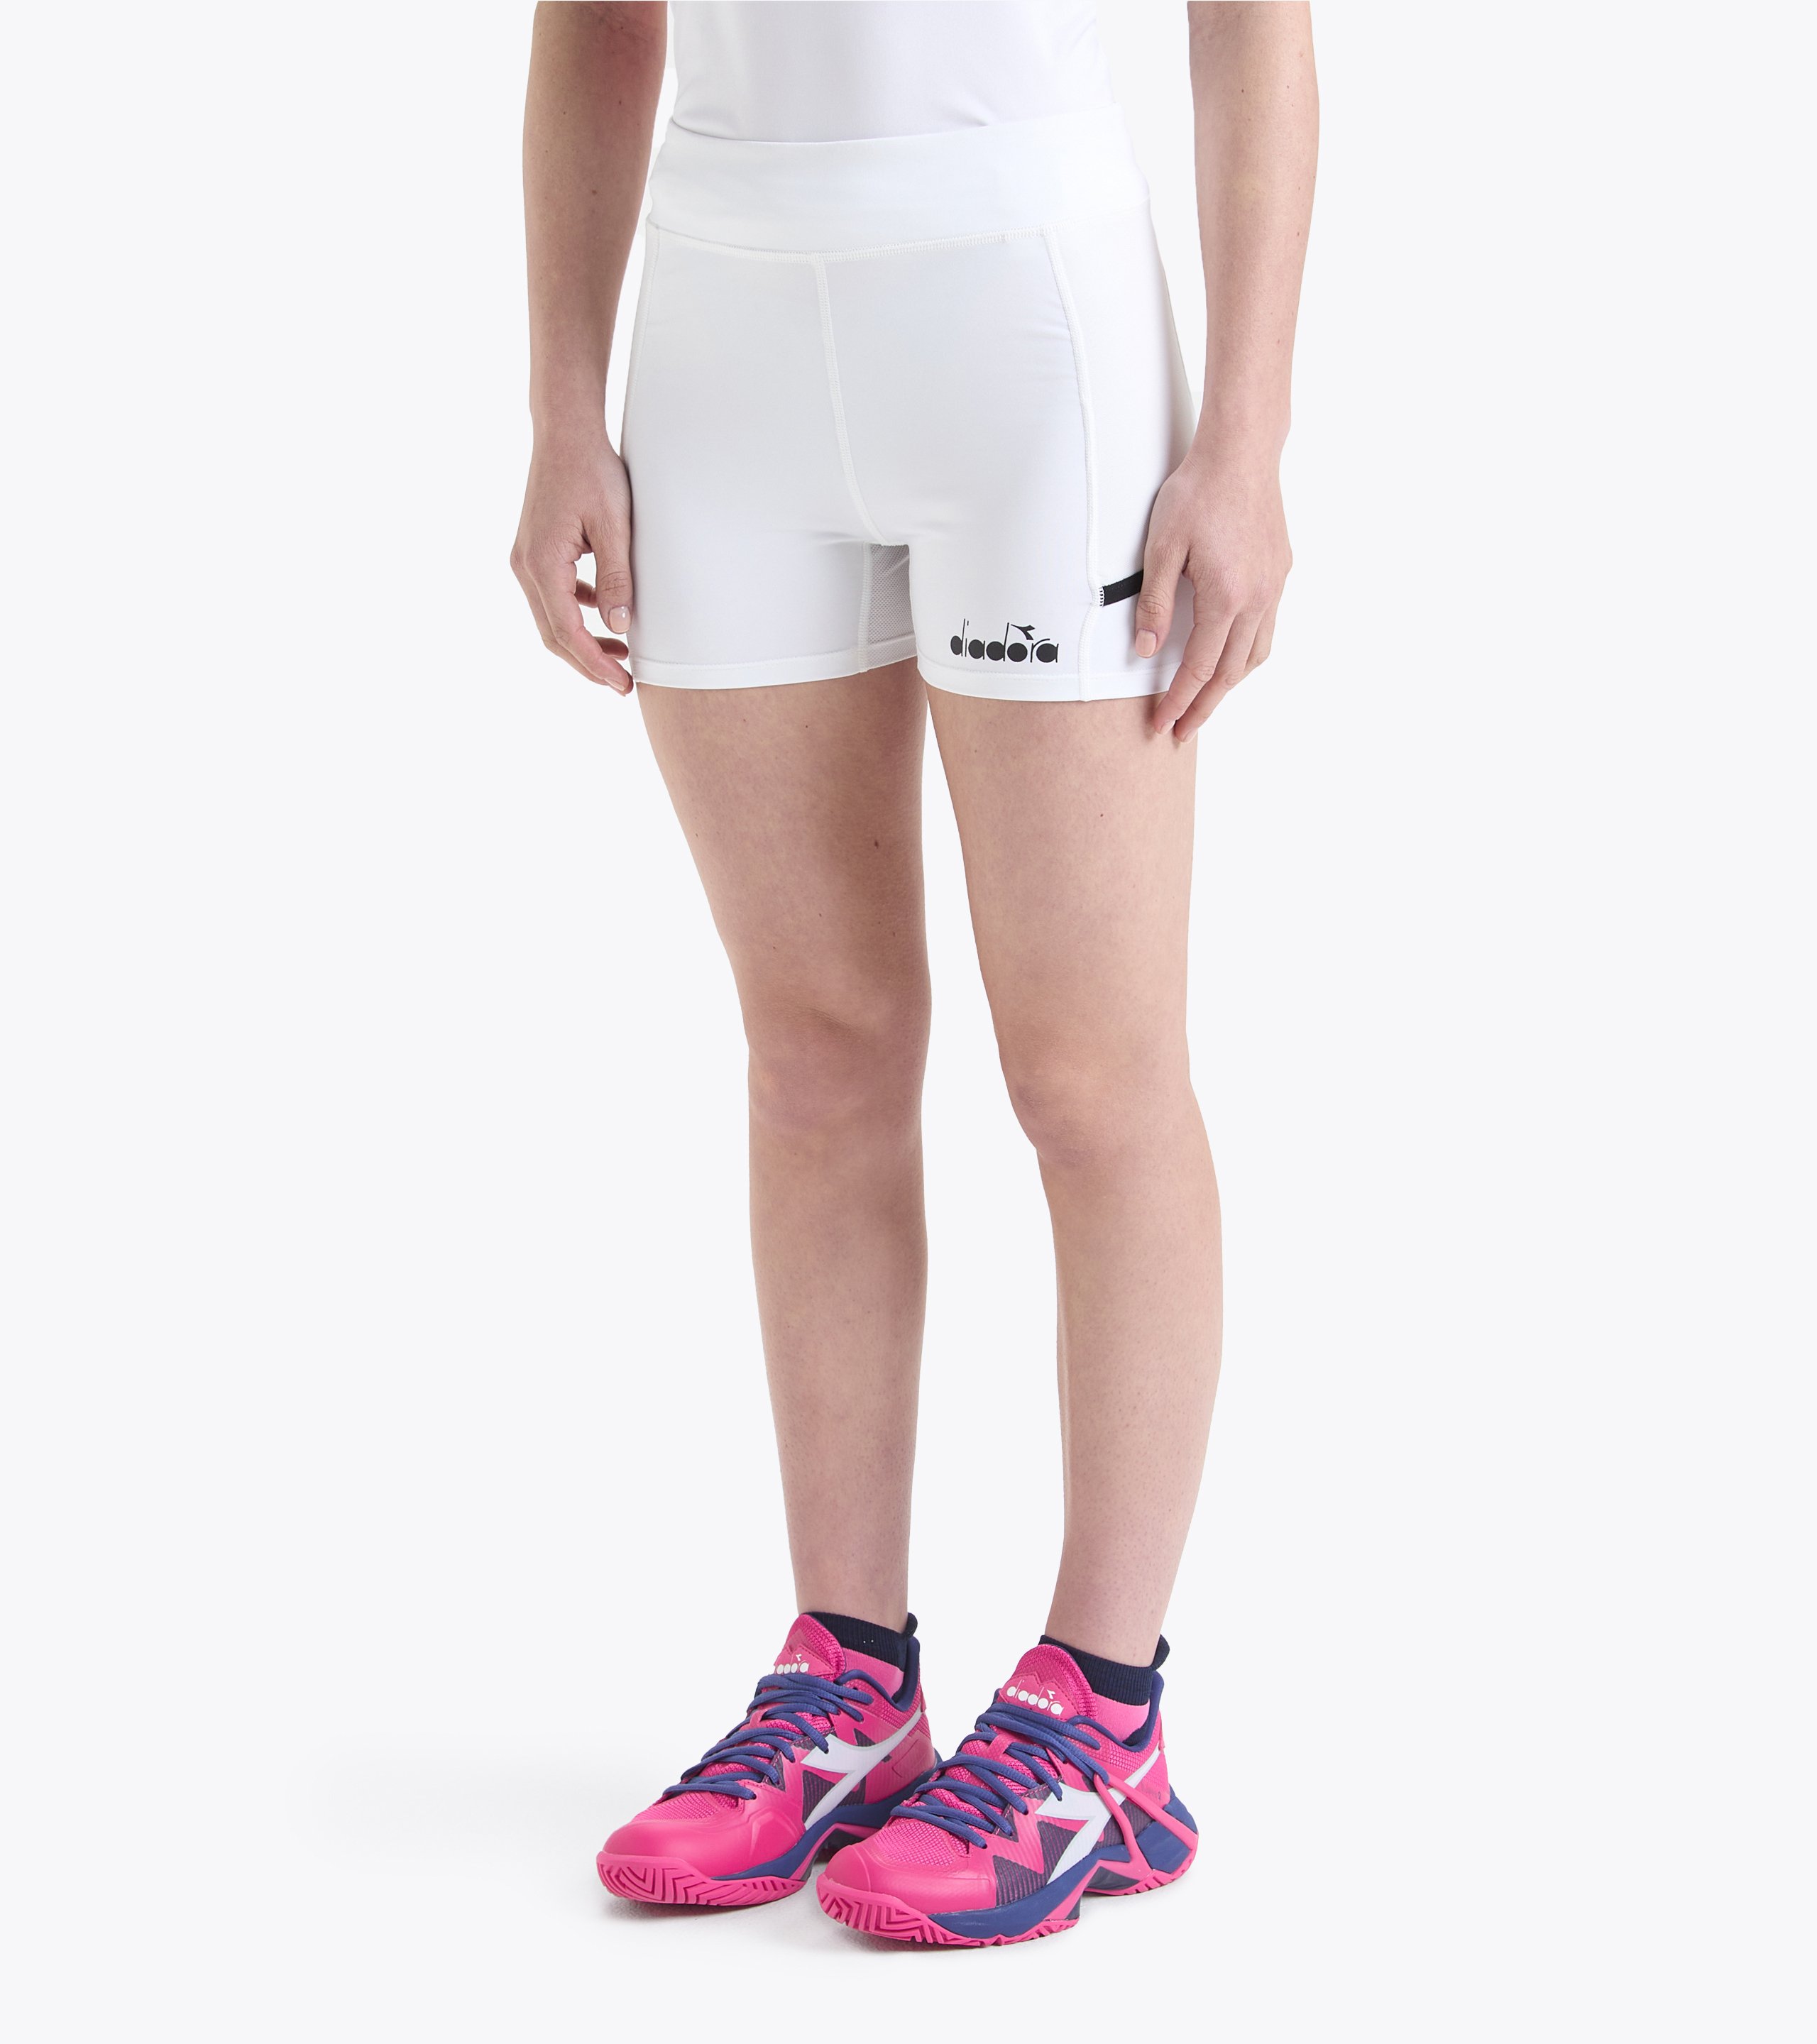 L. SHORT TIGHTS POCKET Tennis shorts - Women - Diadora Online Store CA